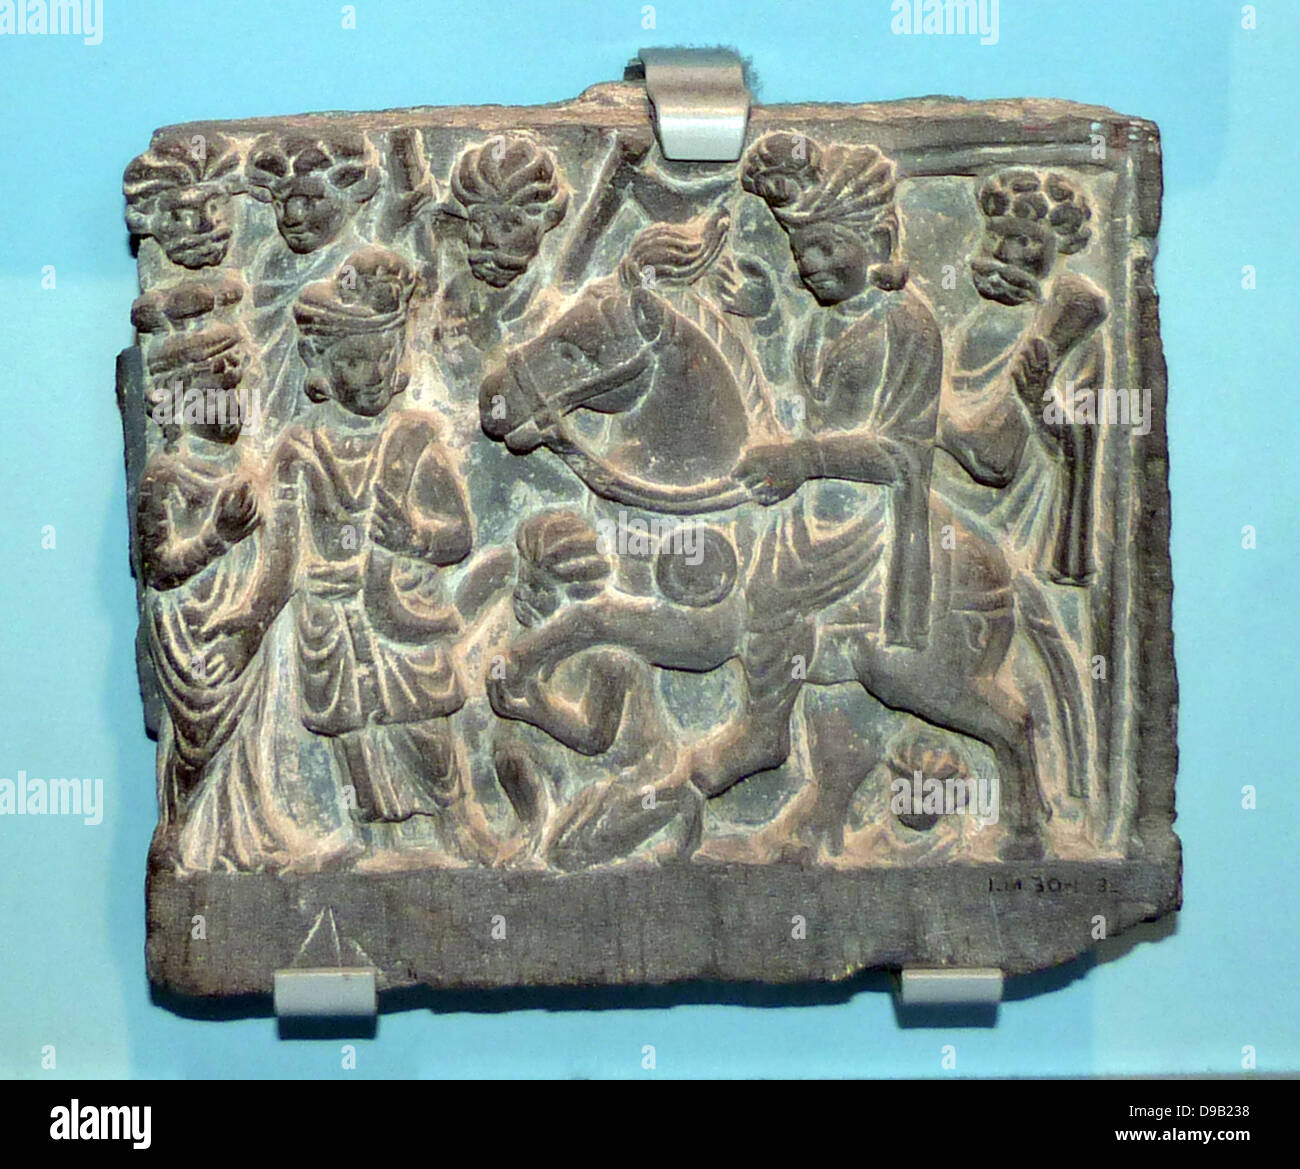 La grande partenza di Buddha. Annuncio100-300 Antica Gandhara, Pakistan, scisto. Il principe Siddharta Gautama (il Buddha sia) è mostrato come egli si allontana segretamente di notte da suo padre la città di Kapilavastu. Cavalca il suo cavallo Kanthaka, cui gli zoccoli sono detenute dal suolo con la divinità. Foto Stock